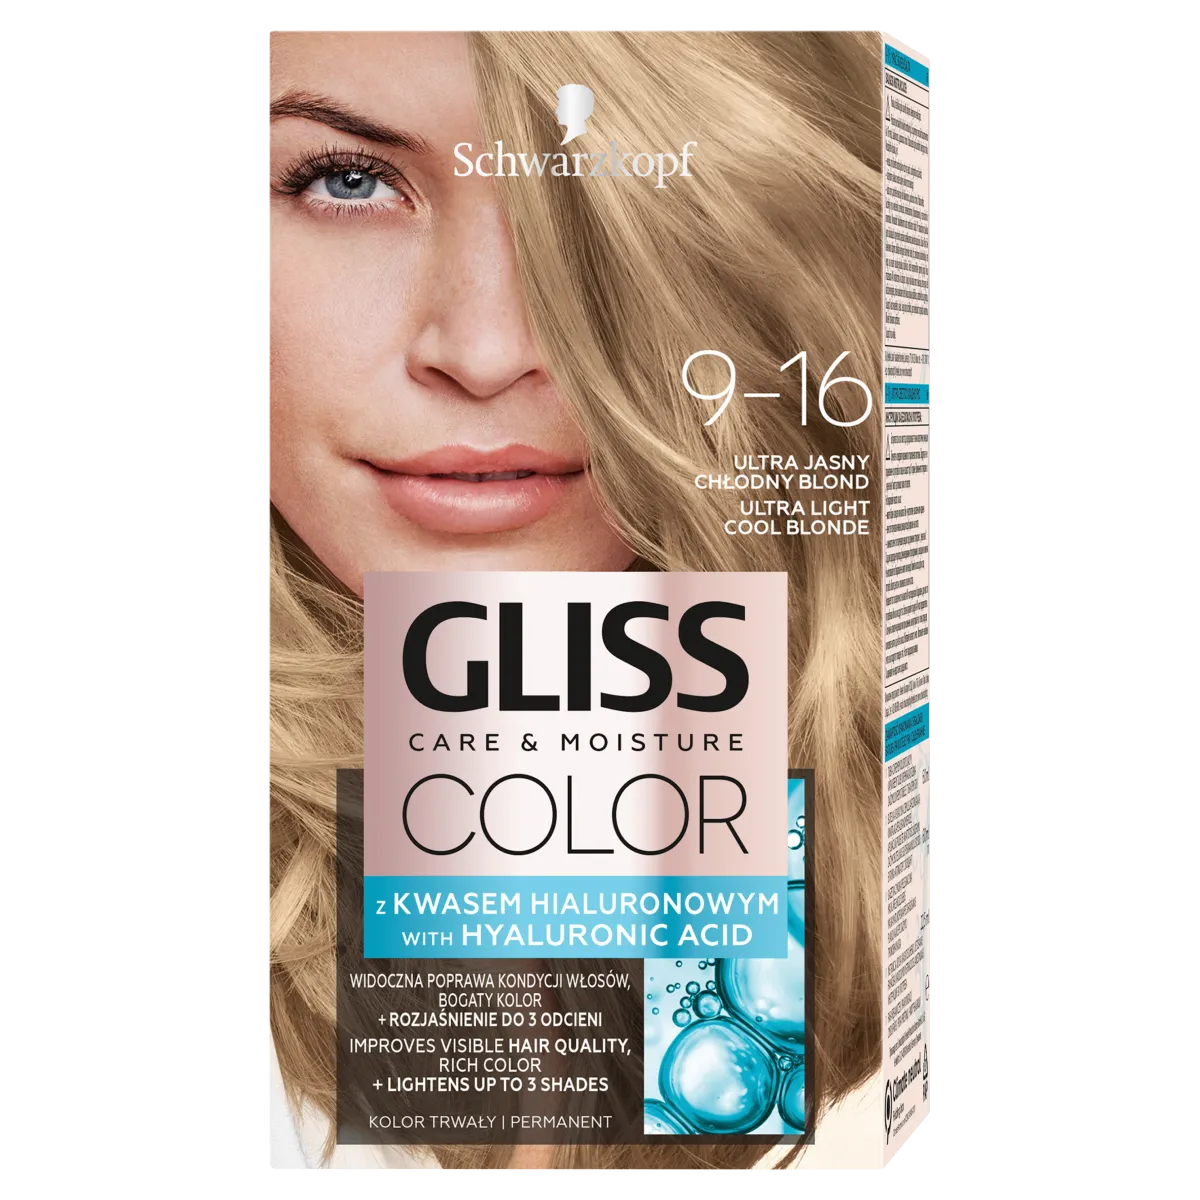 Schwarzkopf Gliss Color Farba do włosów nr 9-16 Ultra jasny chłodny blond, 1 szt.